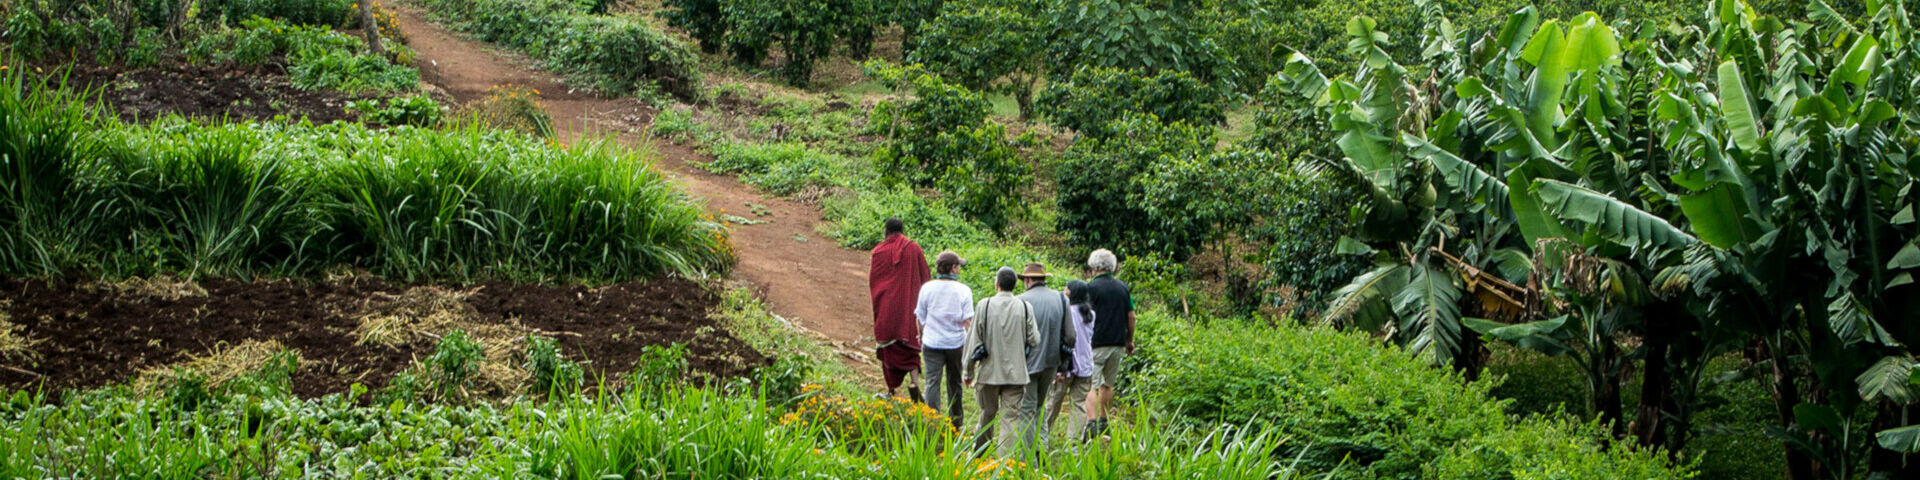 Banner Tours Safaris to Ngorongoro Karatu Area Tanzania Gibbs Farm